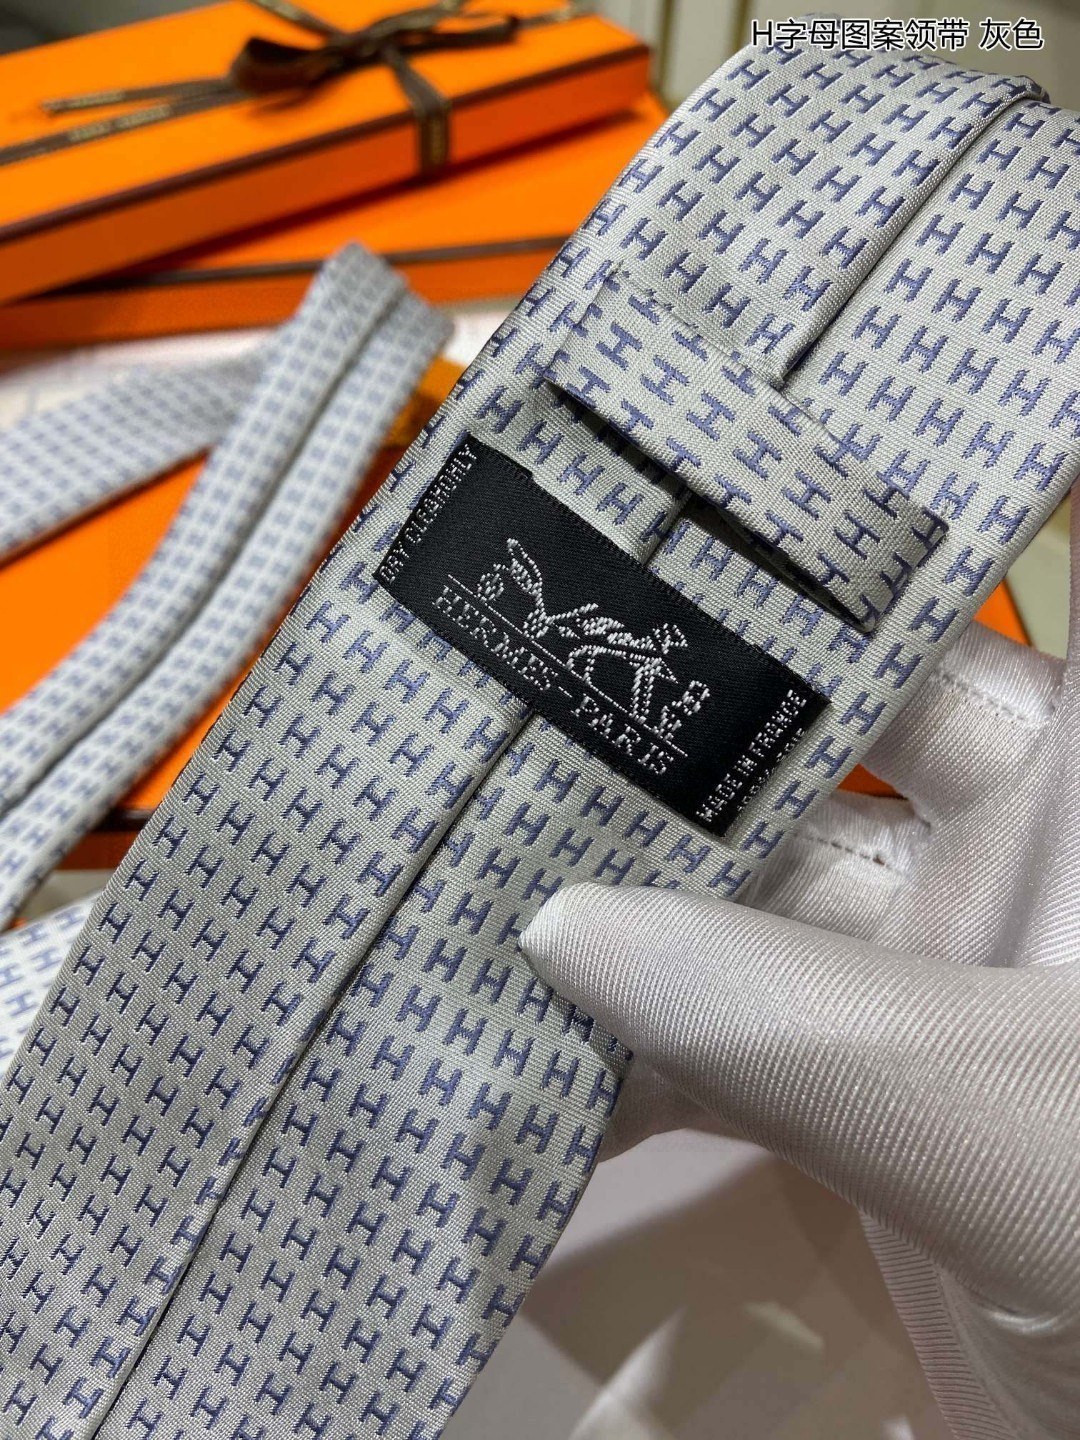 男士新款领带系列H字母图案领带稀有H家每年都有一千条不同印花的领带面世从最初的多以几何图案表现骑术活动为